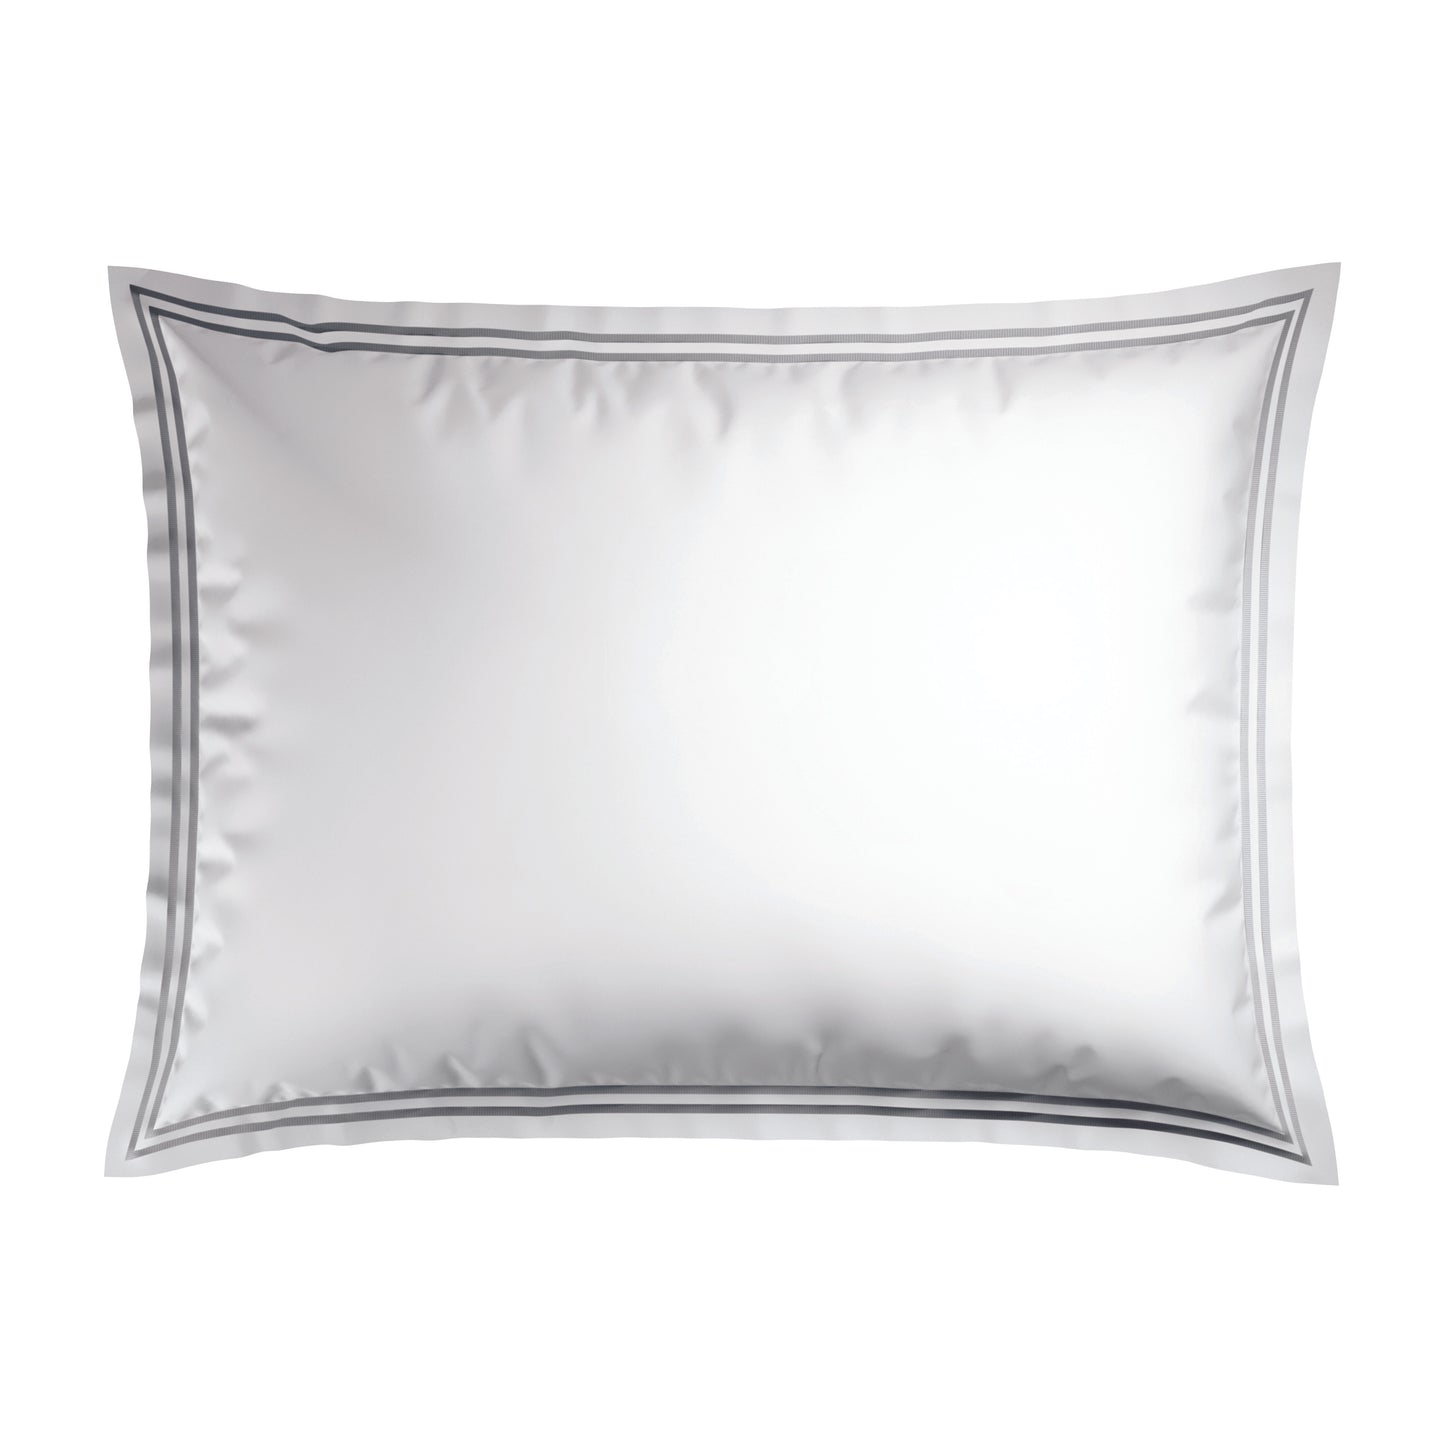 Pillowcase(s) cotton satin - Nice White / Silver